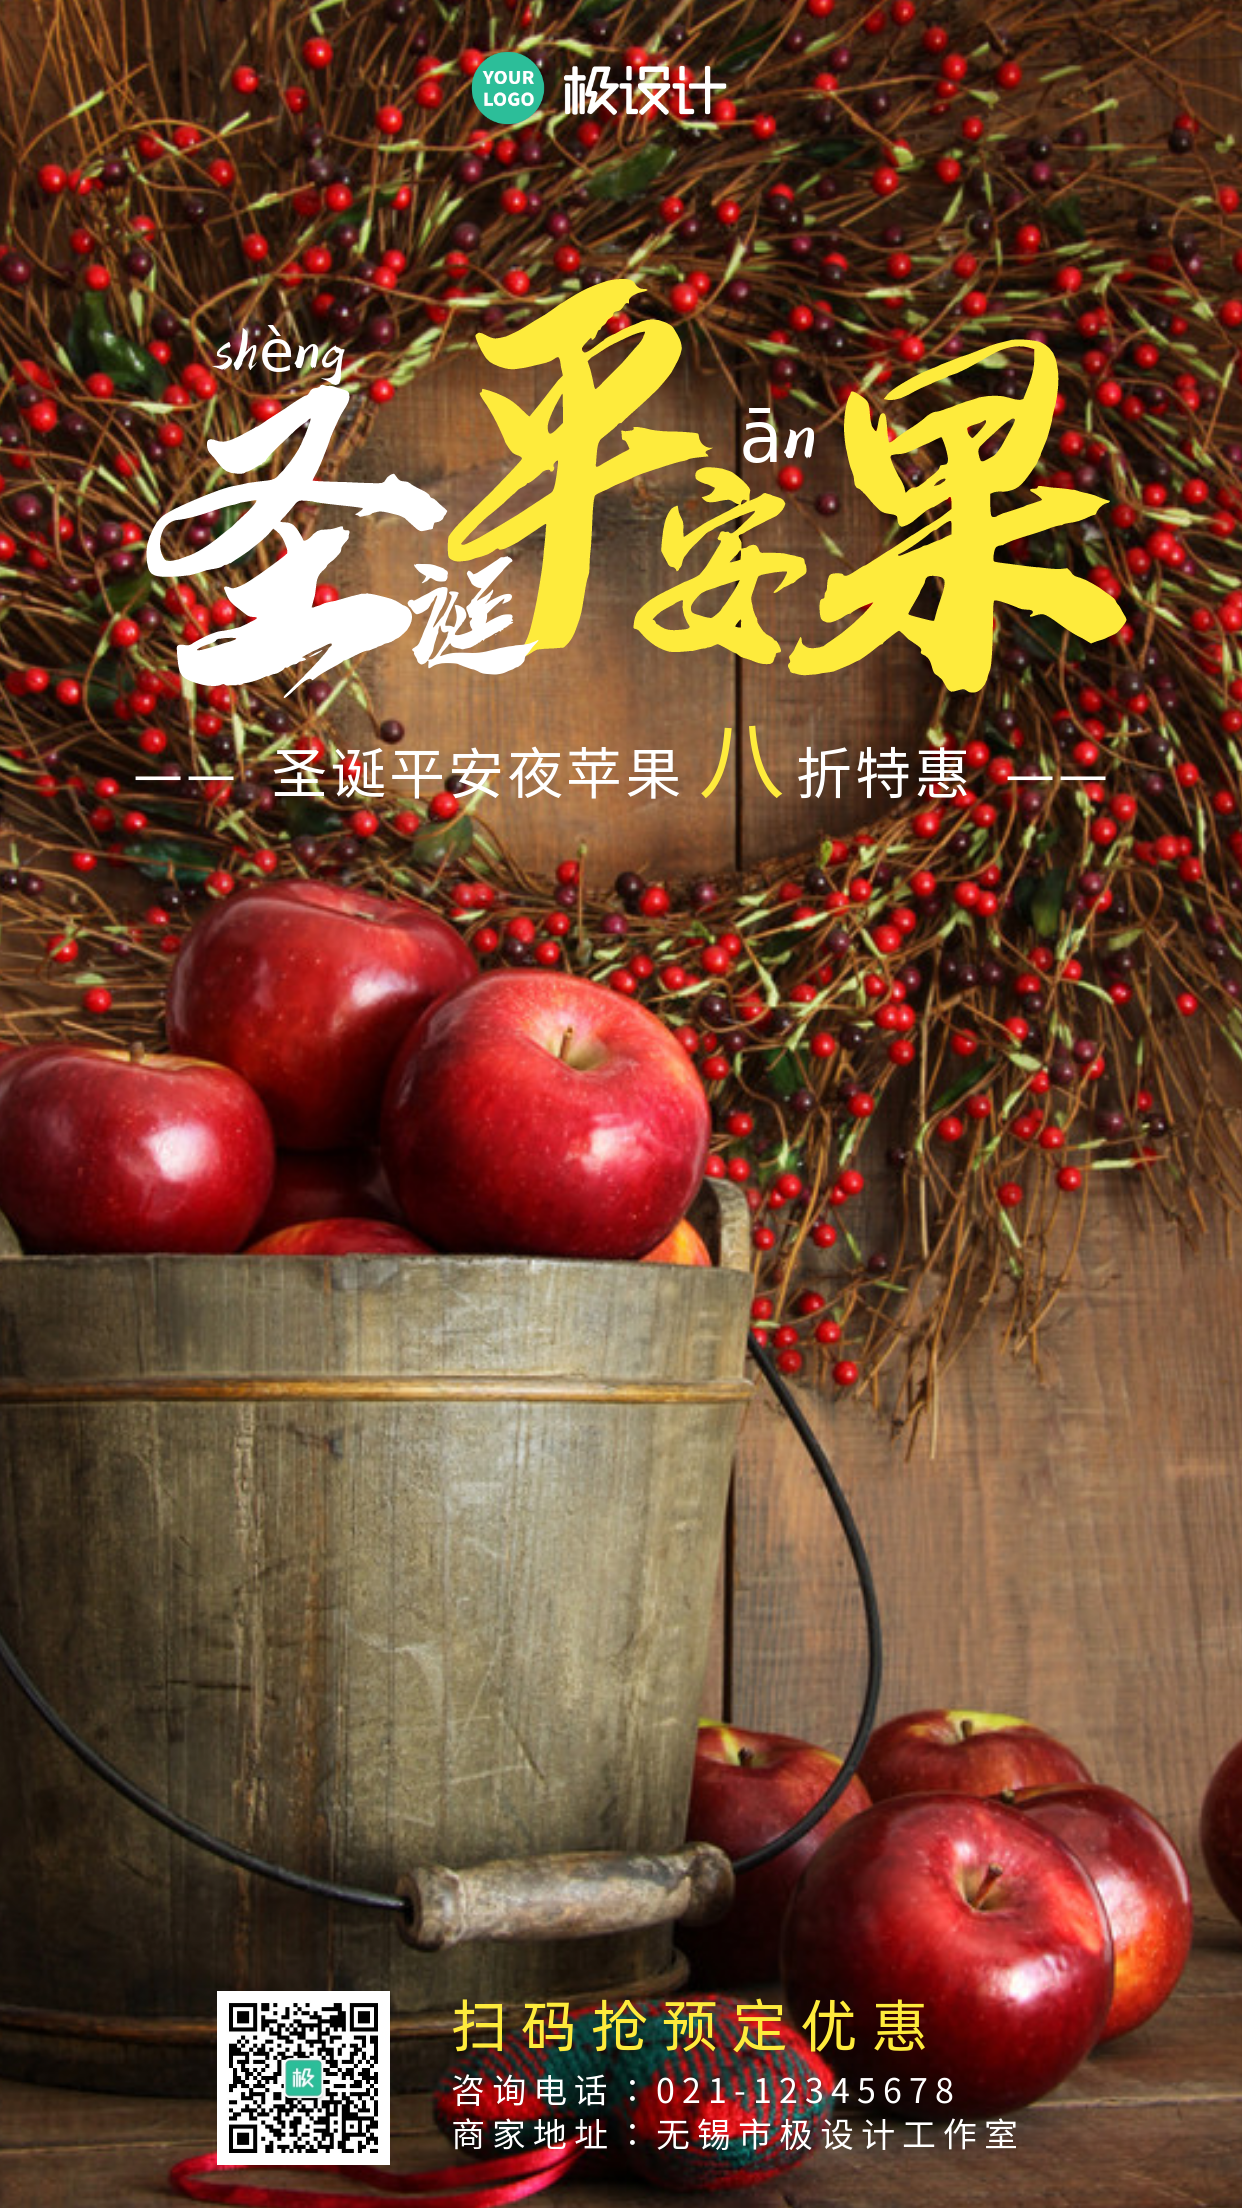 红色摄影圣诞平安夜水果店苹果促销手机海报